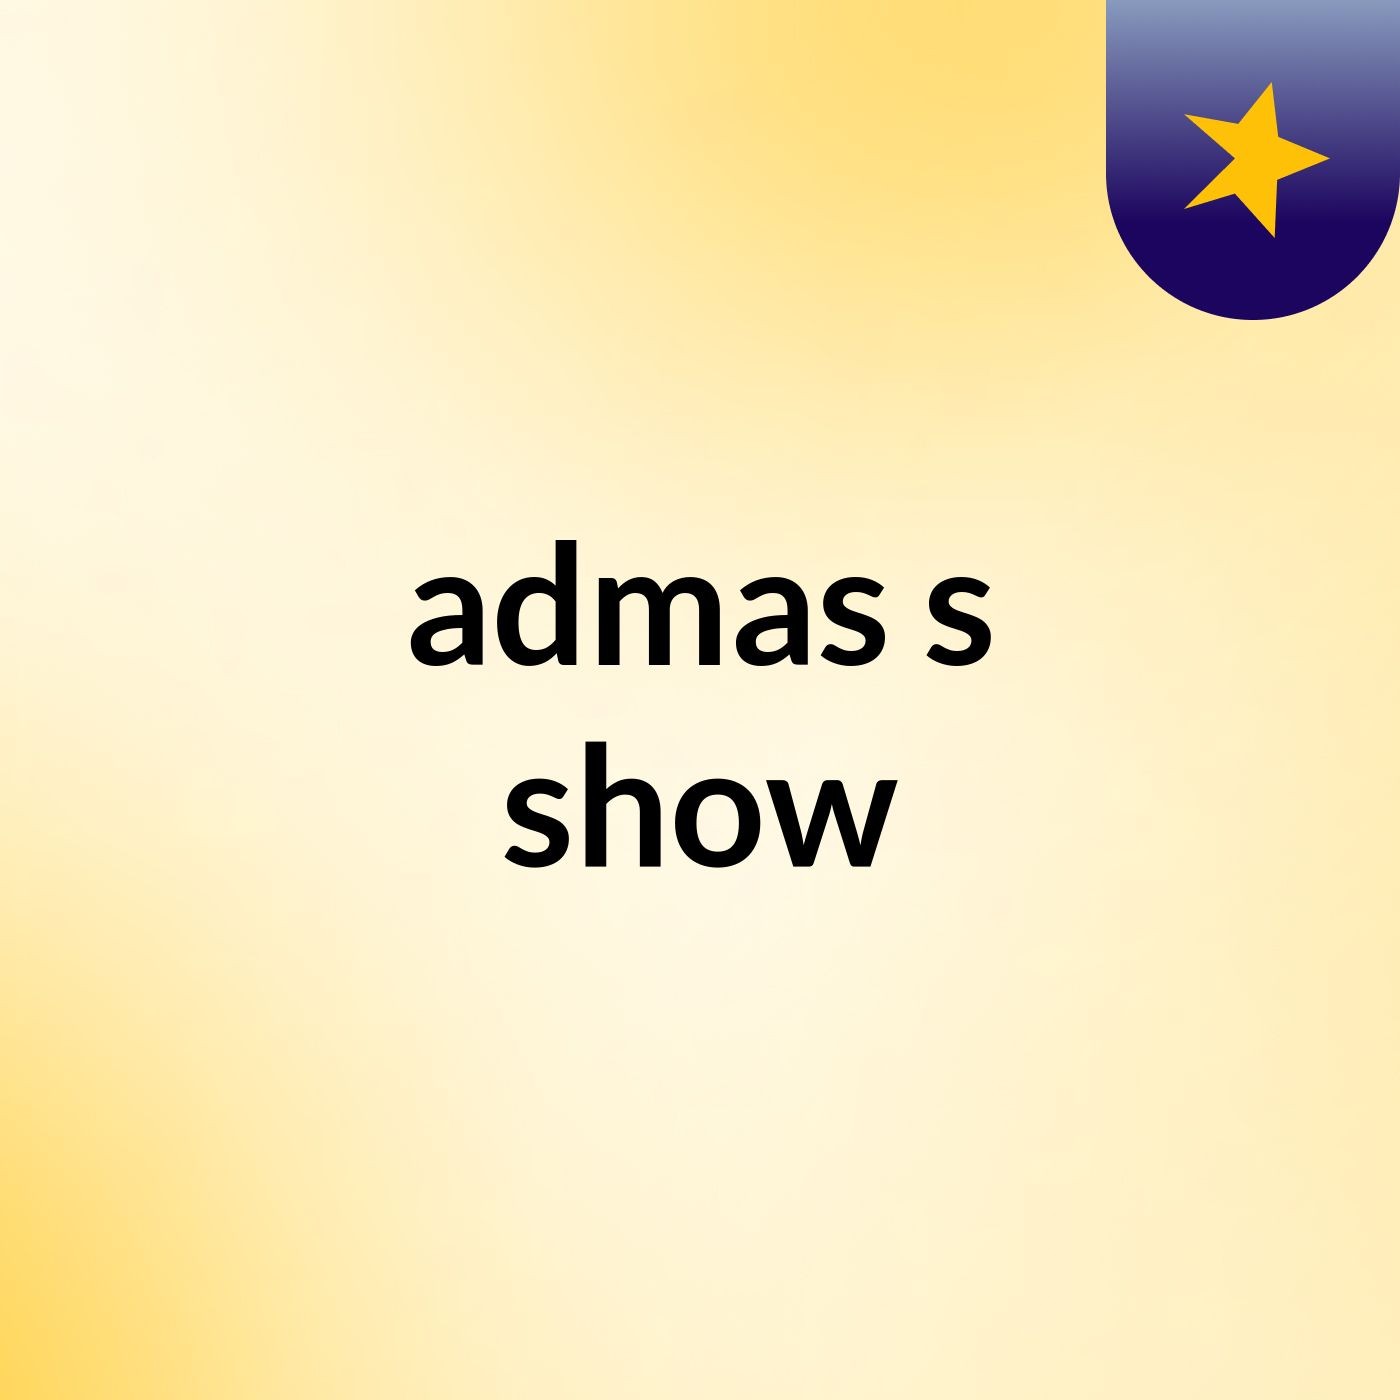 admas's show